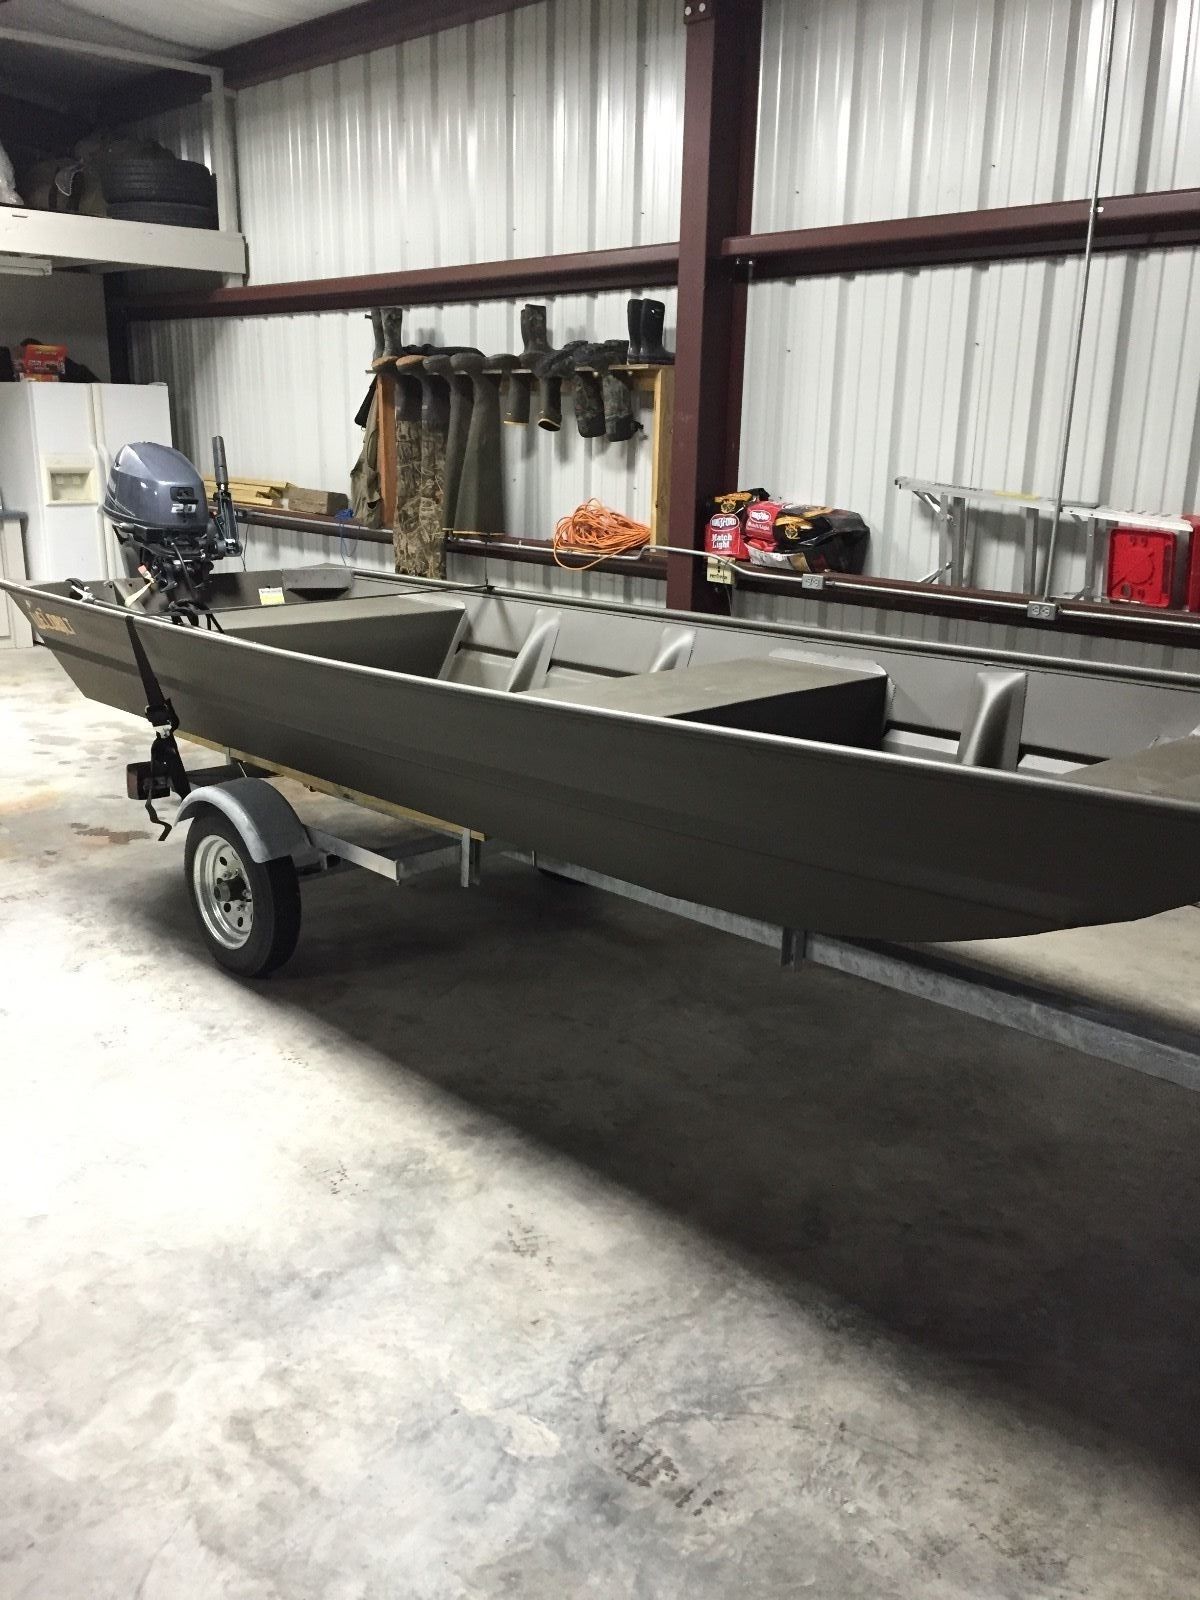 weldbilt jon boat 2015 for sale for ,600 - boats-from